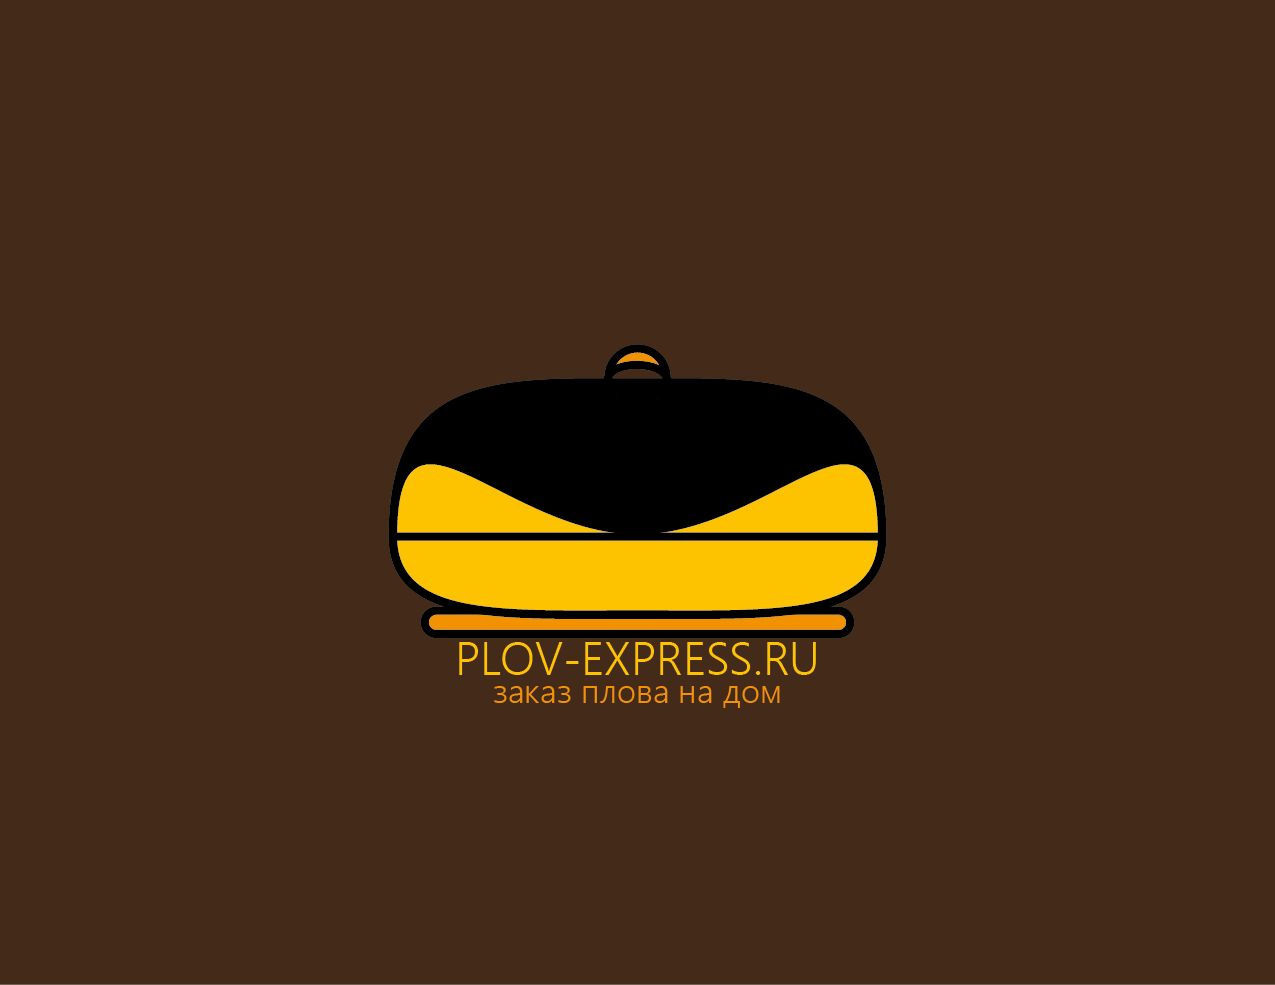 Лого и фирмстиль для сайта plov-express.ru - дизайнер dvdxxx